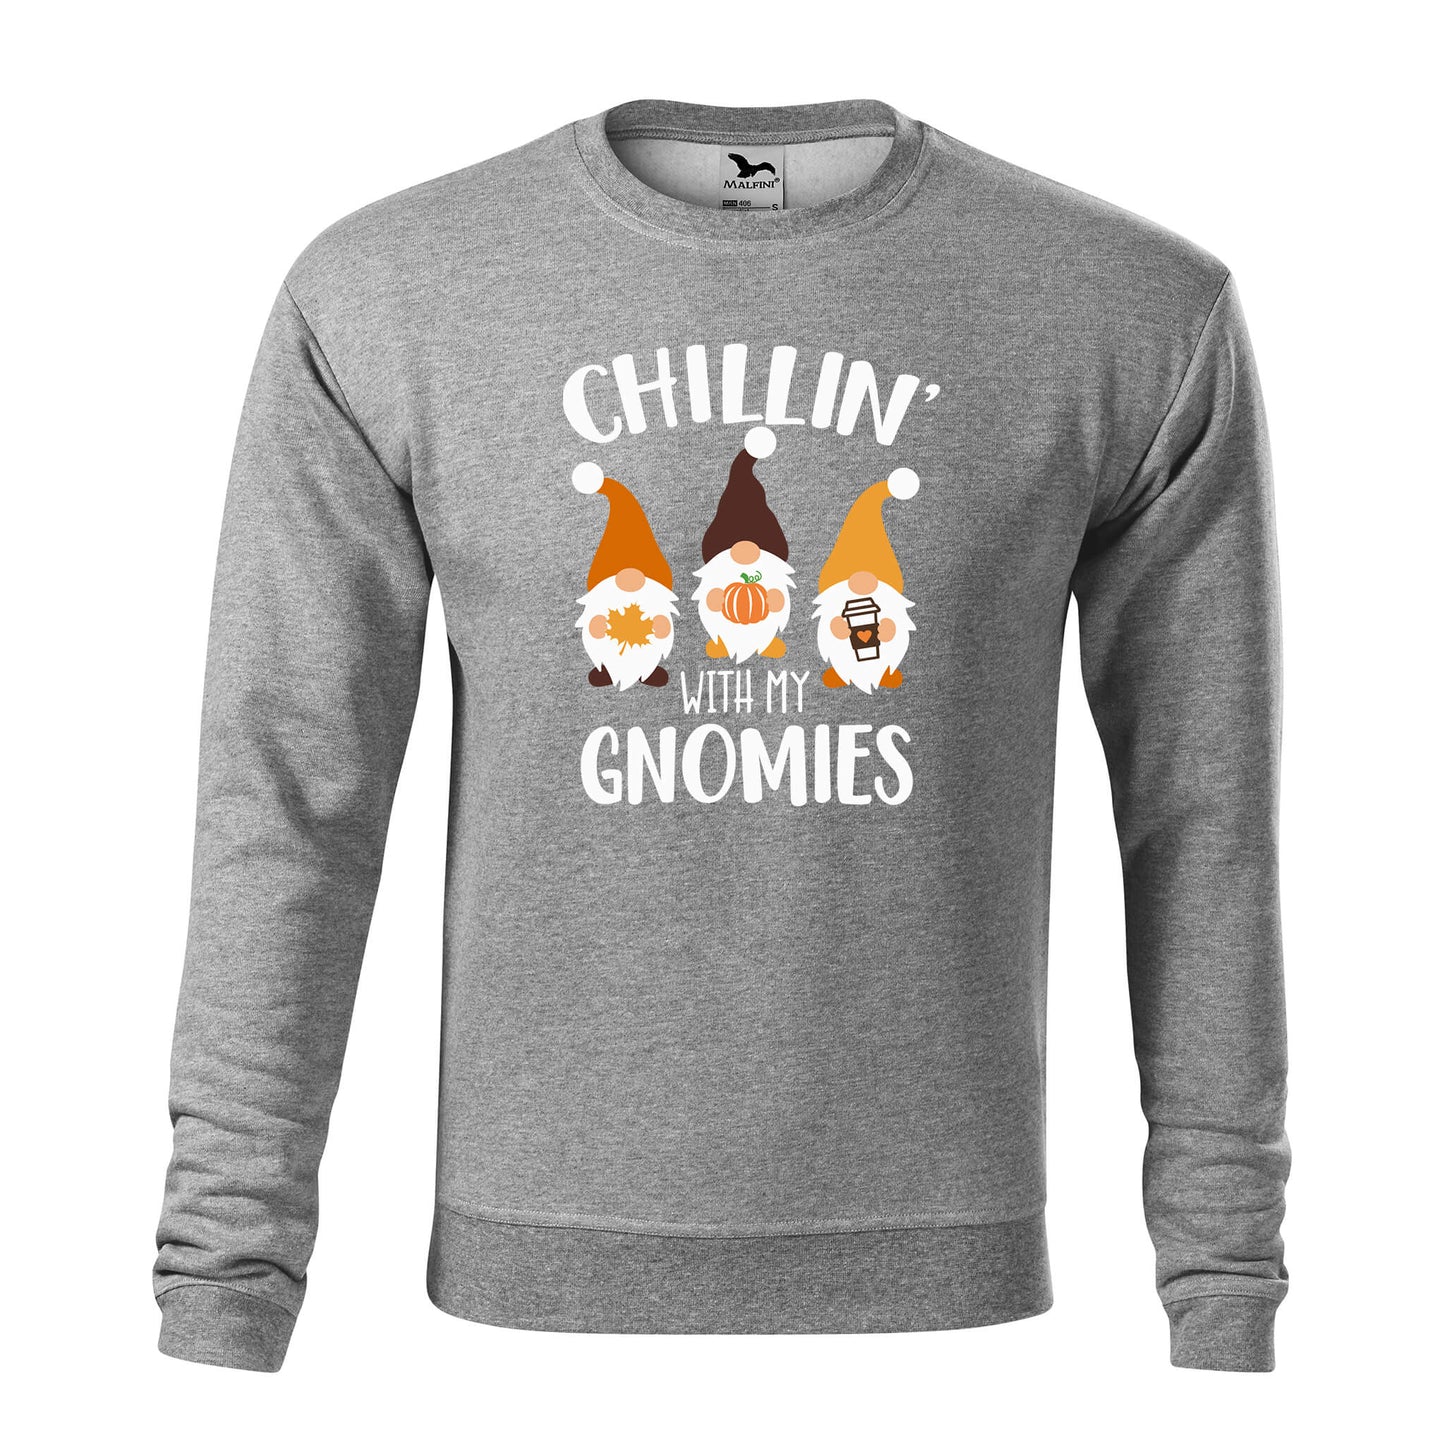 Chillin with my gnomies Sweatshirt – Herren